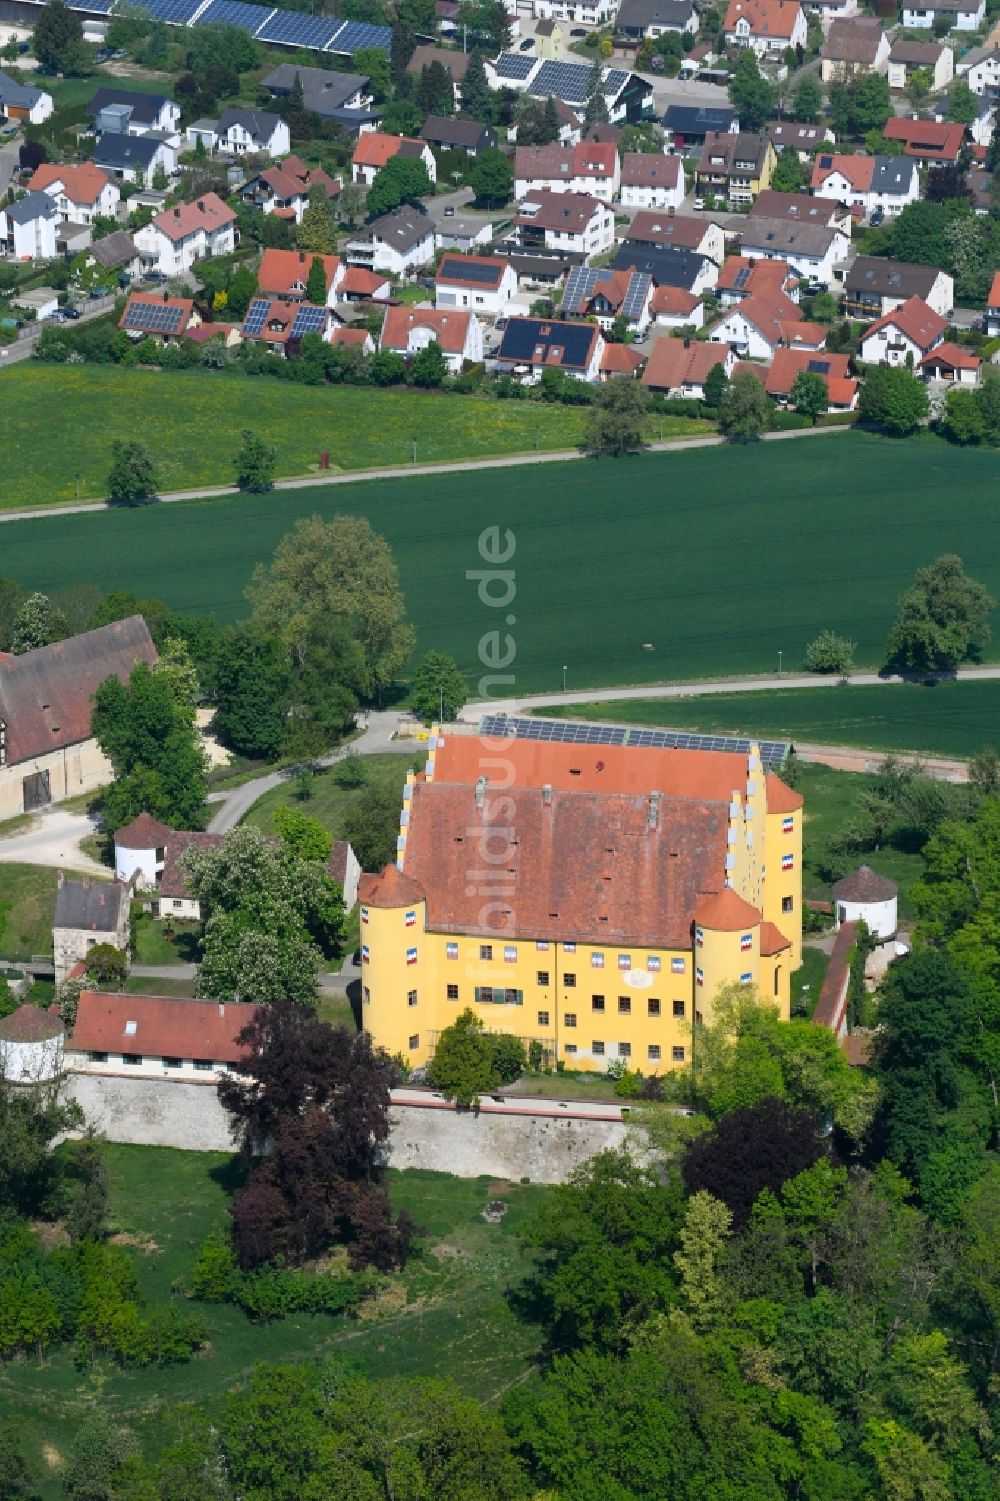 Erbach von oben - Palais des Schloss Schloss Erbach in Erbach im Bundesland Baden-Württemberg, Deutschland